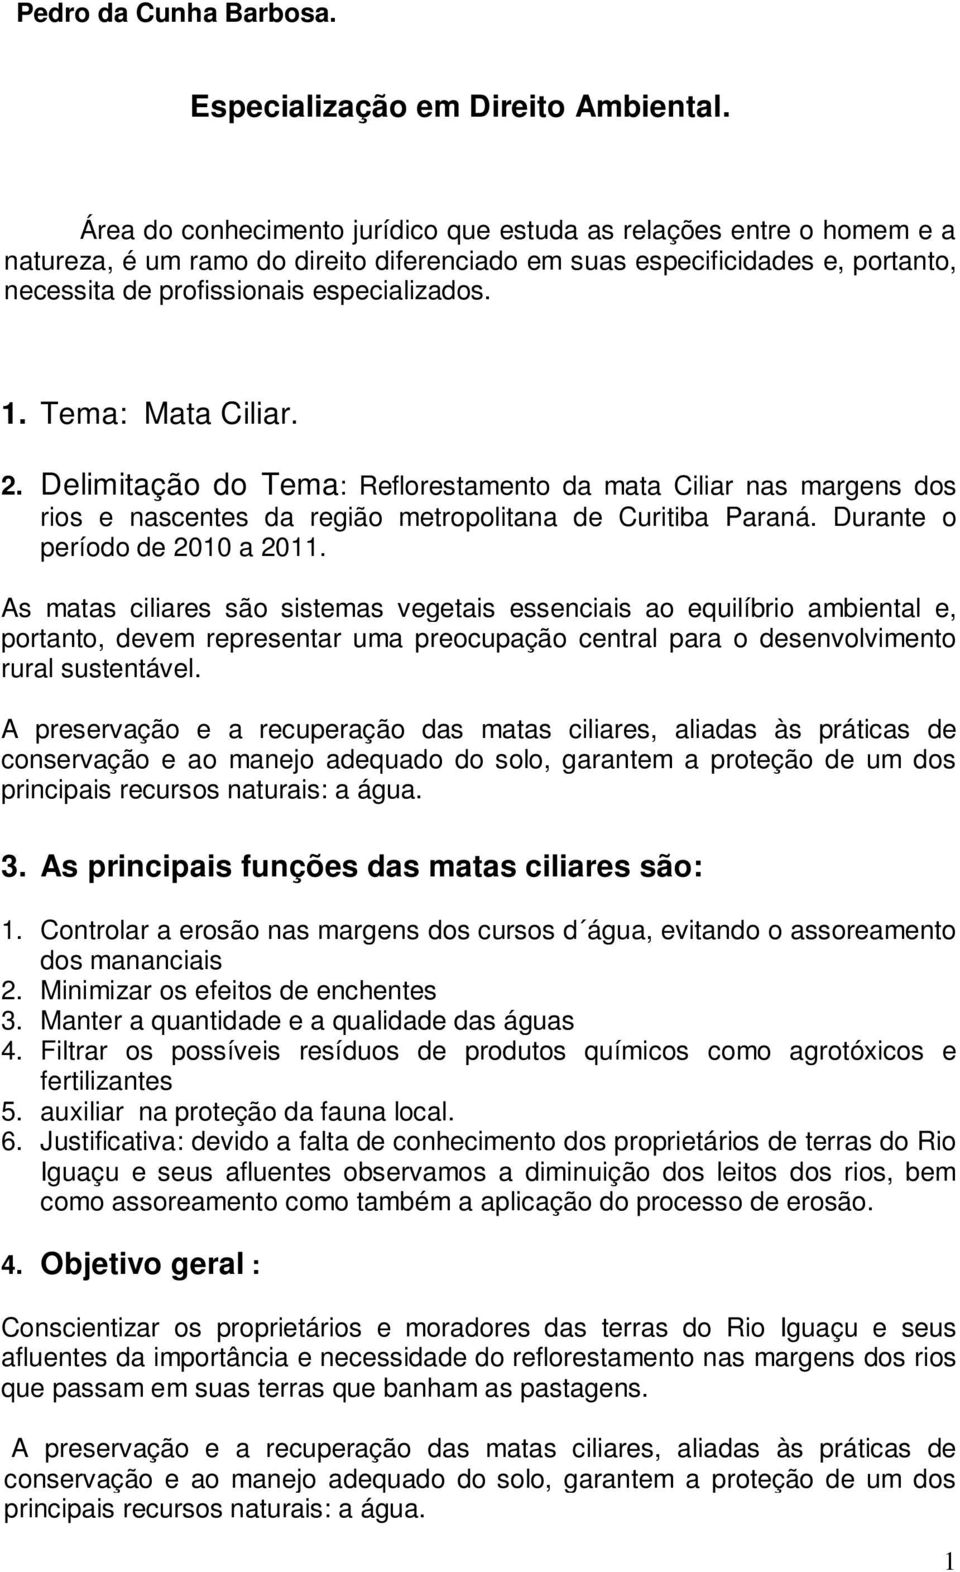 Tema: Mata Ciliar. 2. Delimitação do Tema: Reflorestamento da mata Ciliar nas margens dos rios e nascentes da região metropolitana de Curitiba Paraná. Durante o período de a 2011.